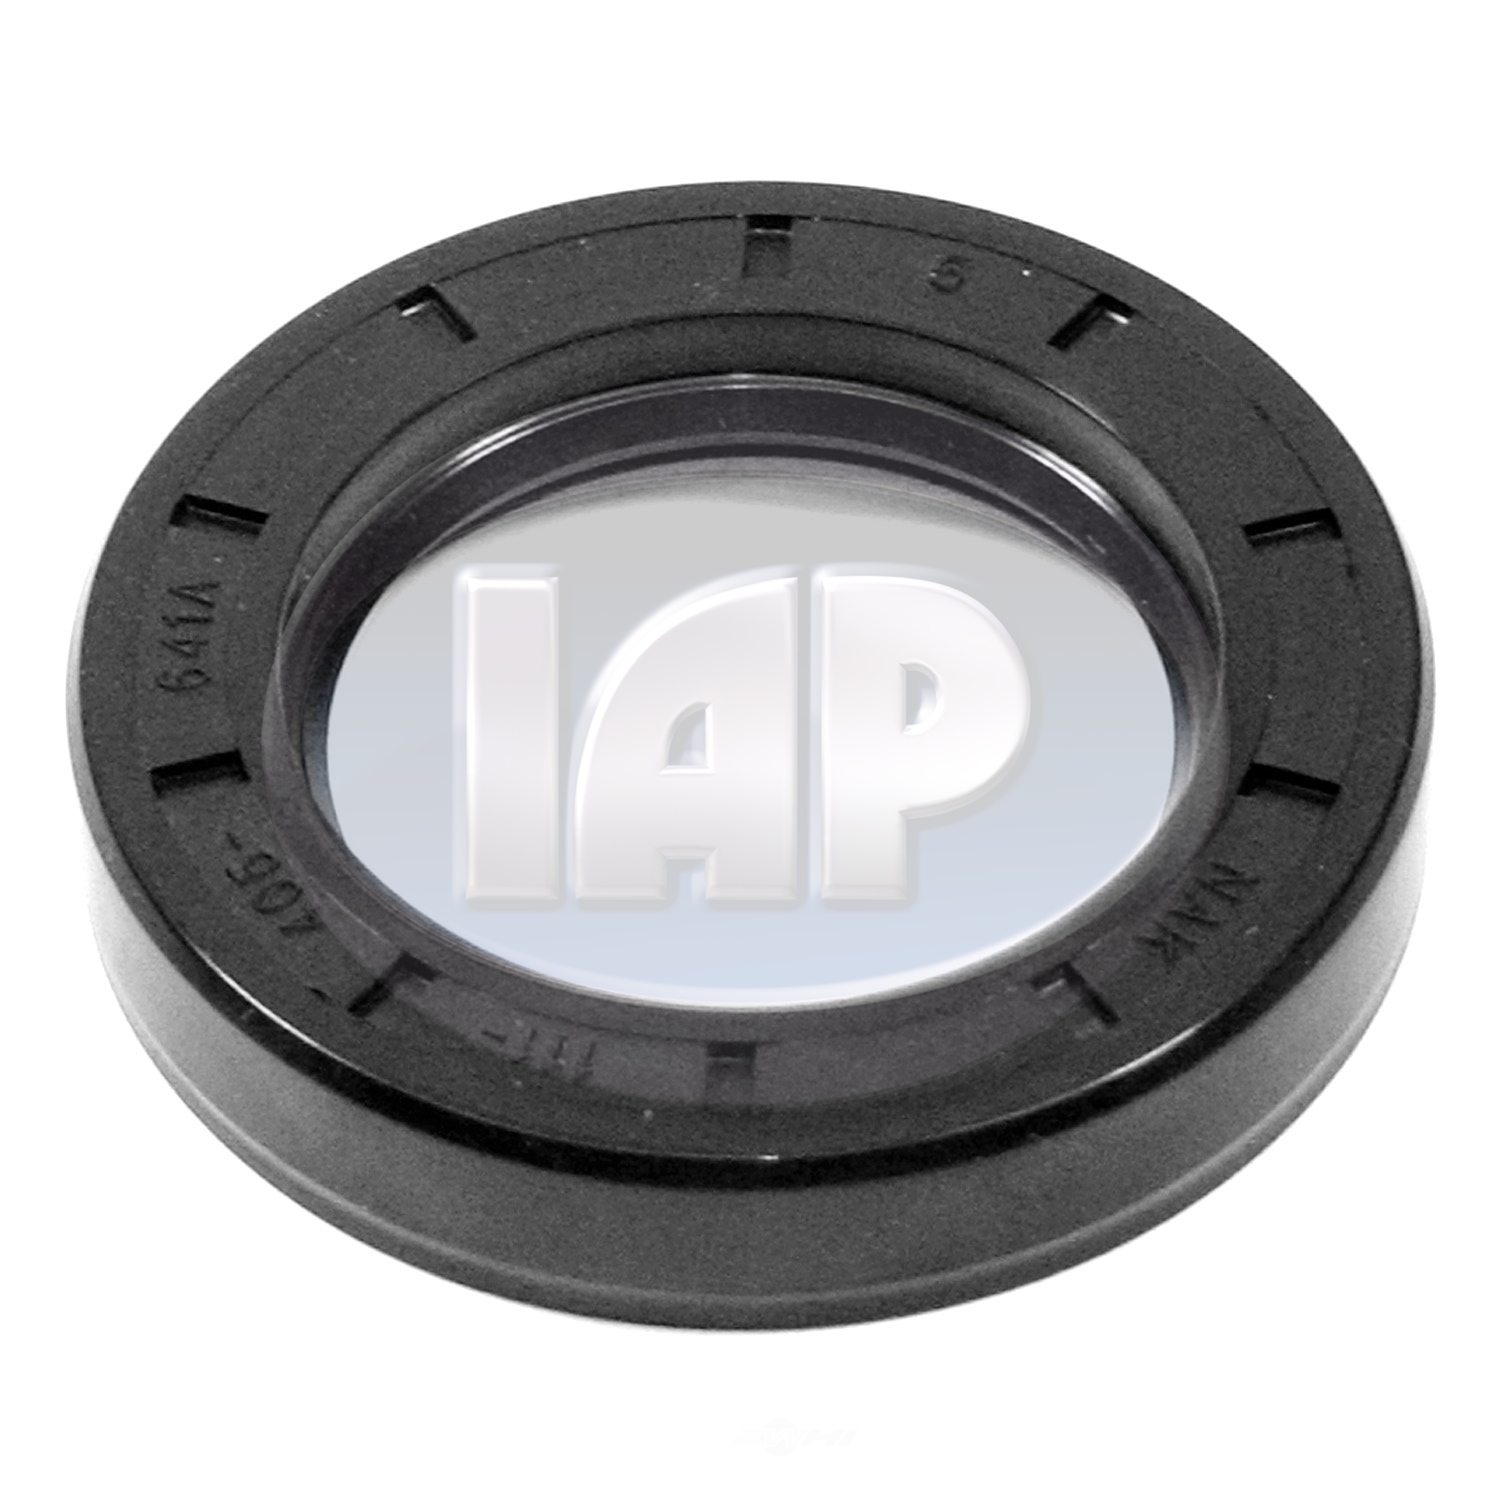 IAP/KUHLTEK MOTORWERKS - Wheel Seal - KMS 111405641A